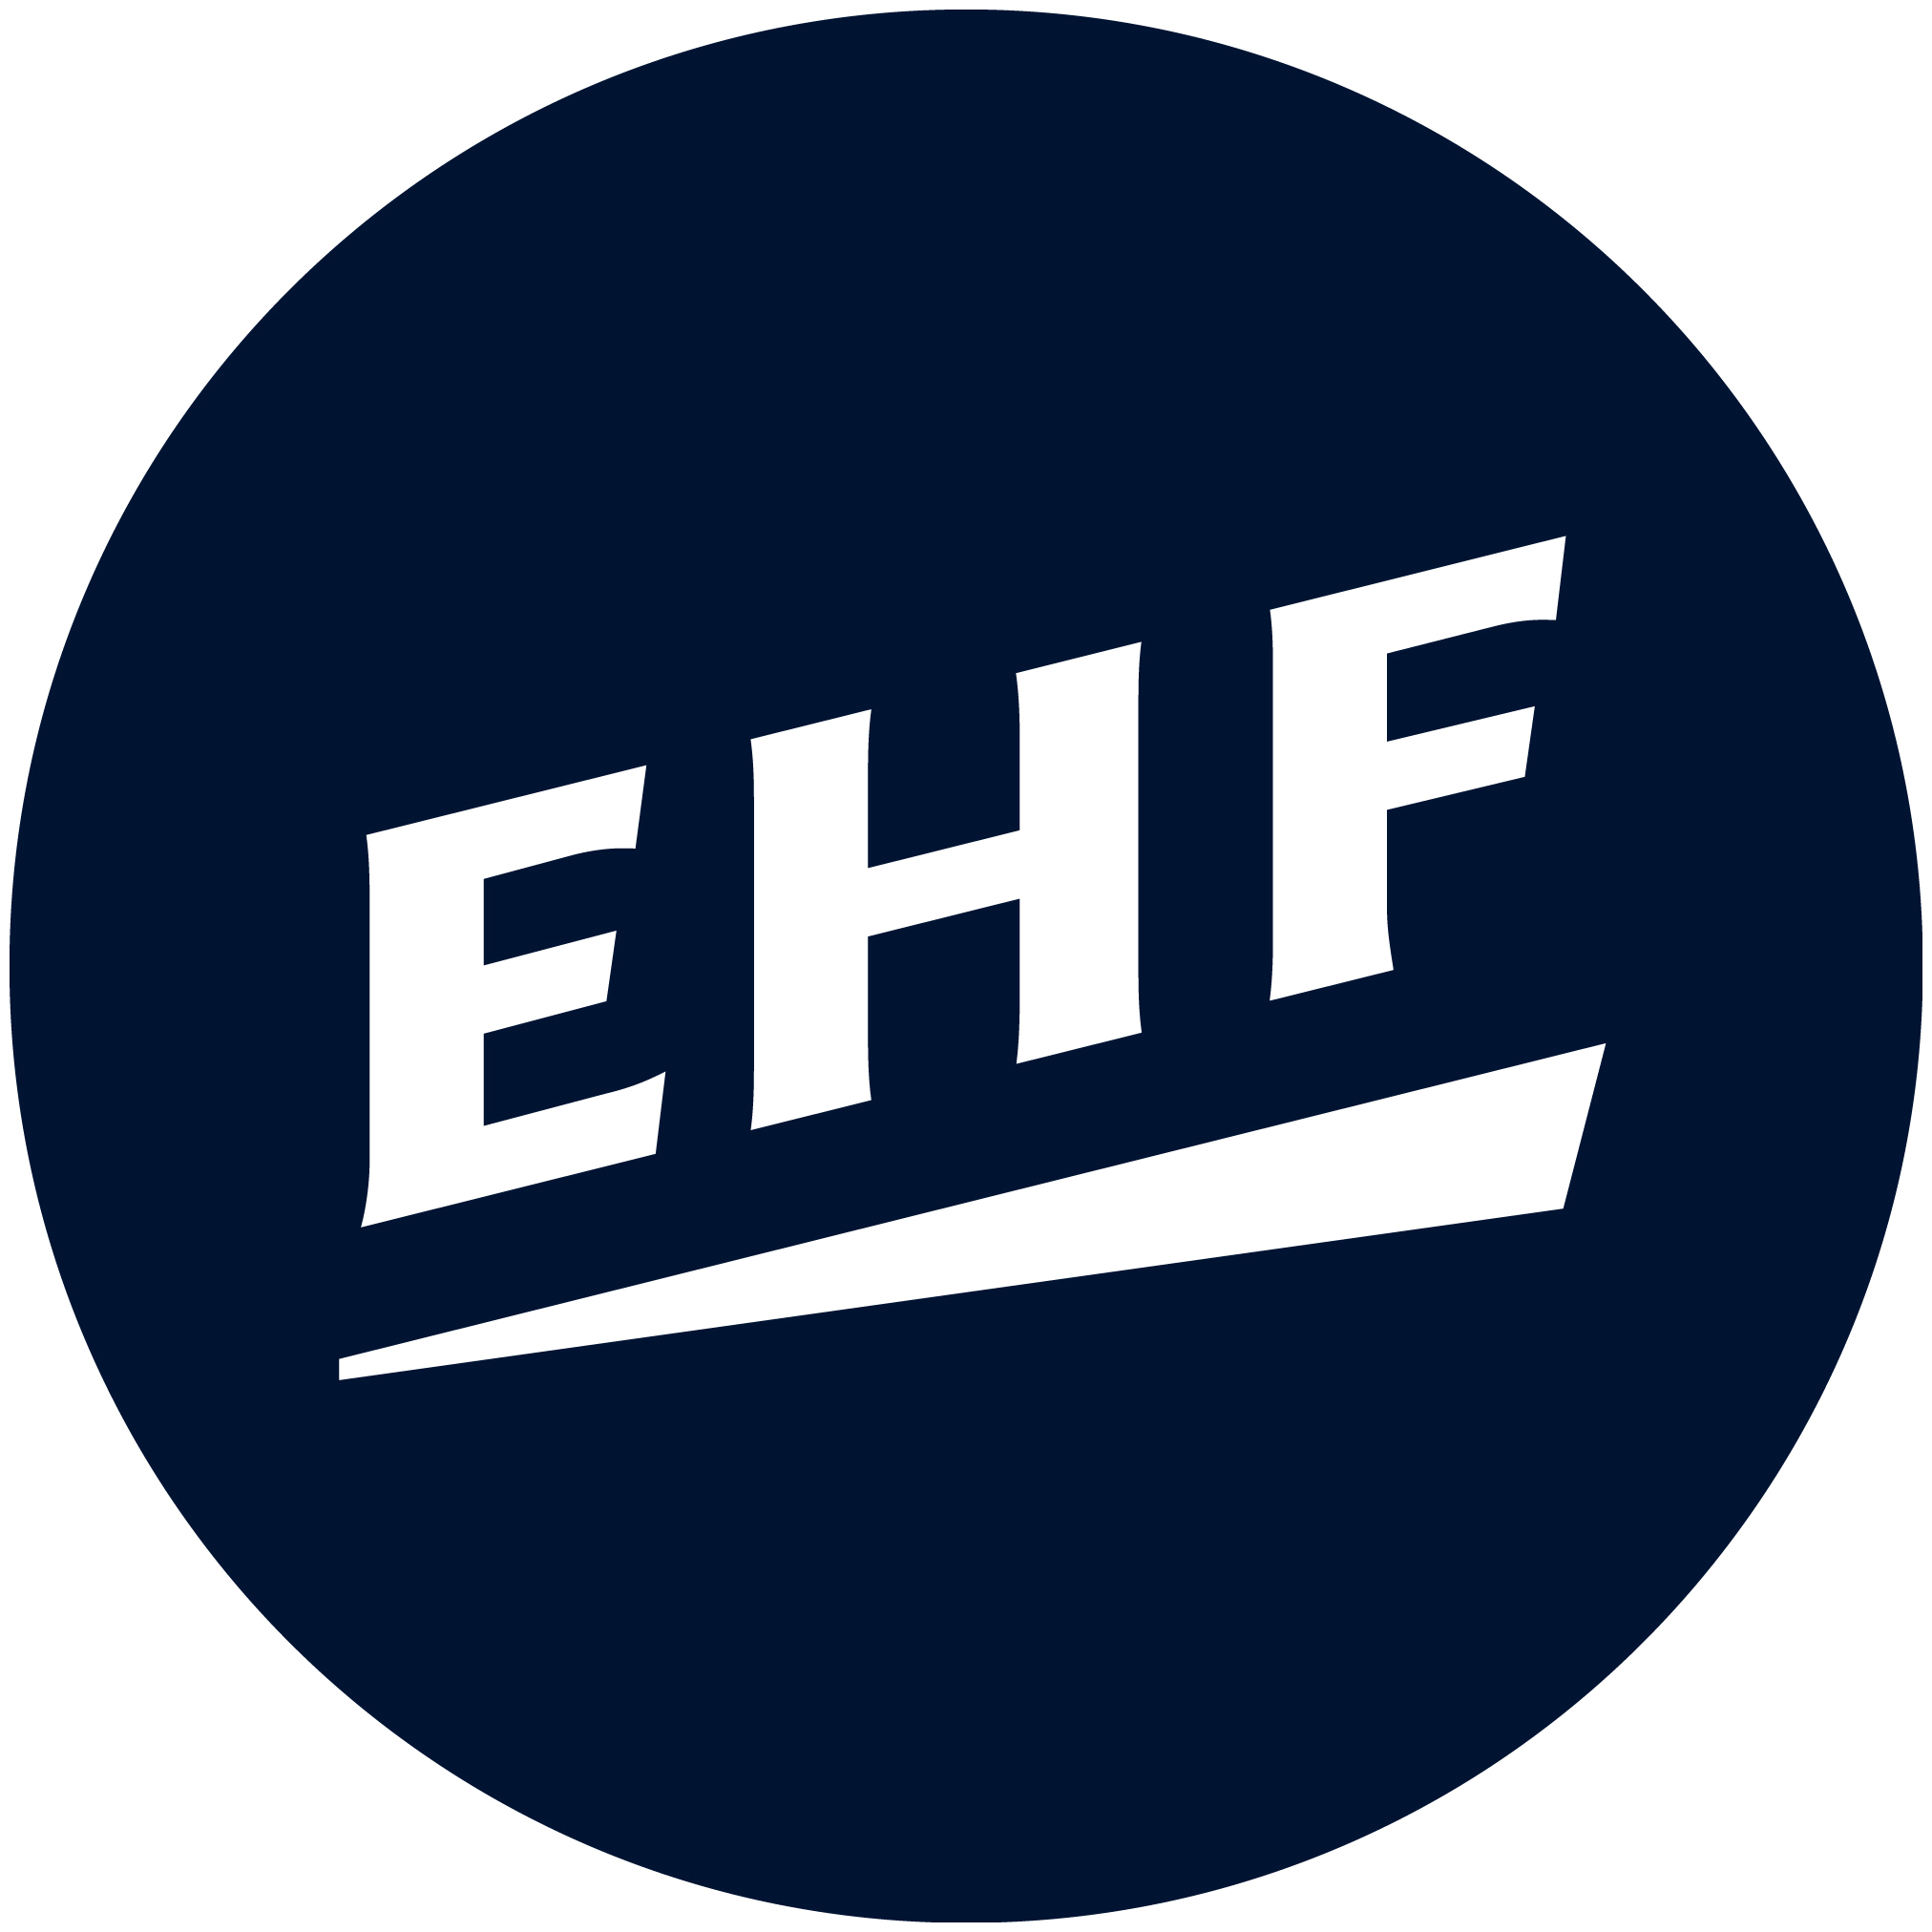 2022 European Handball Men's 20 EHF EURO